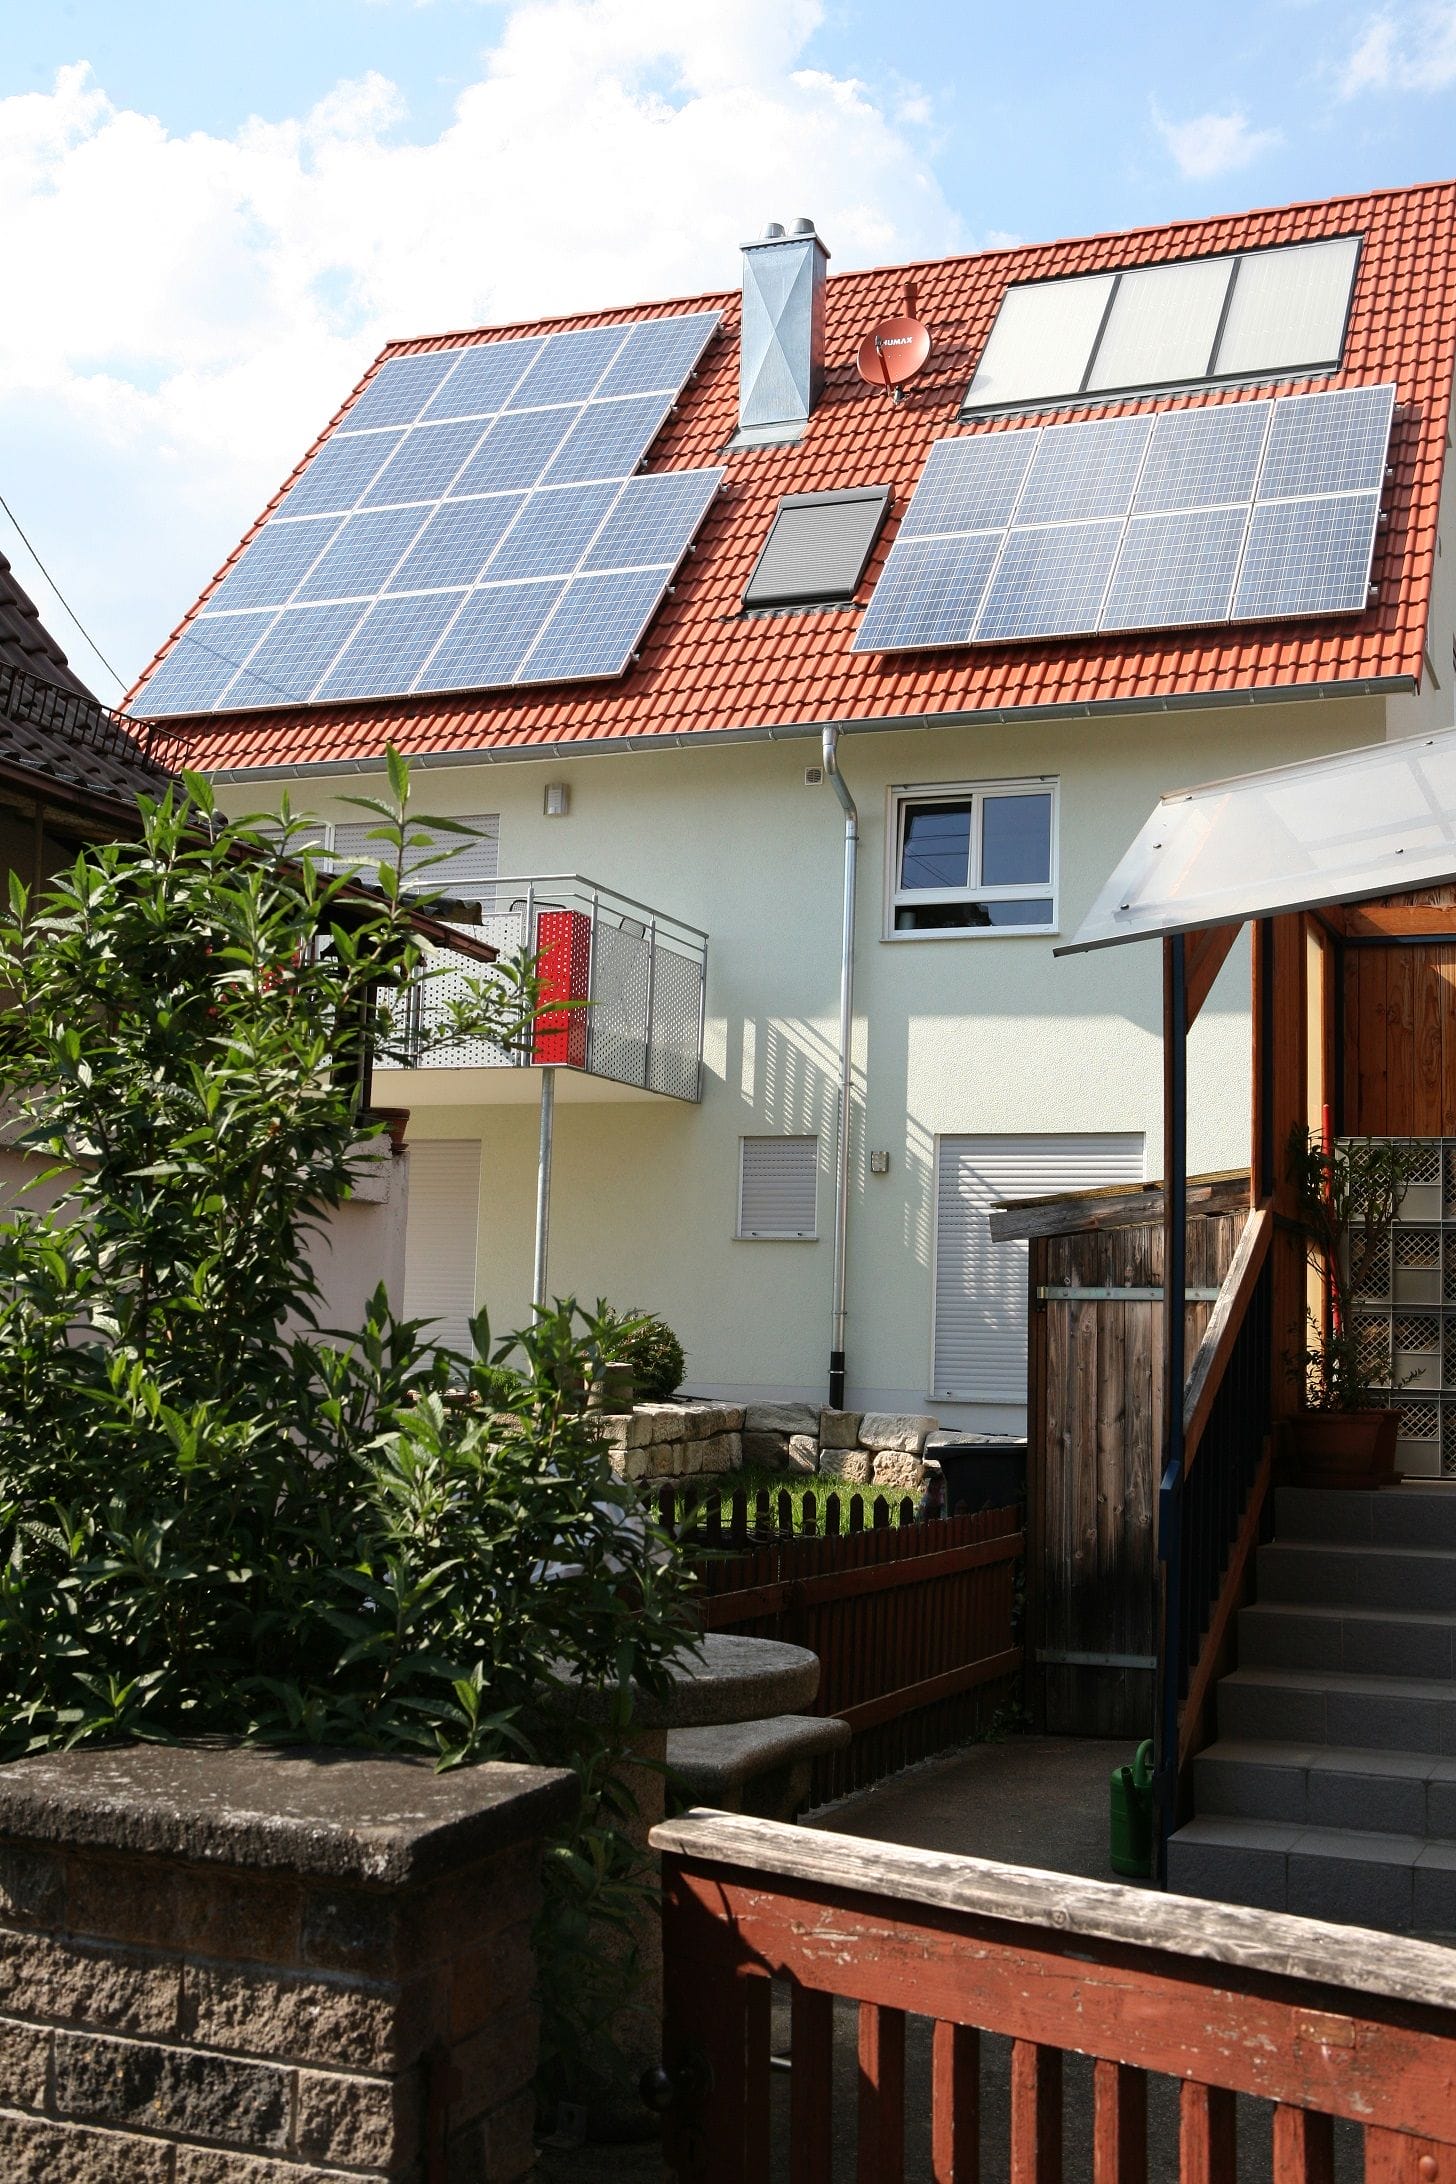 Solarpflicht für Neubauten in Tübingen